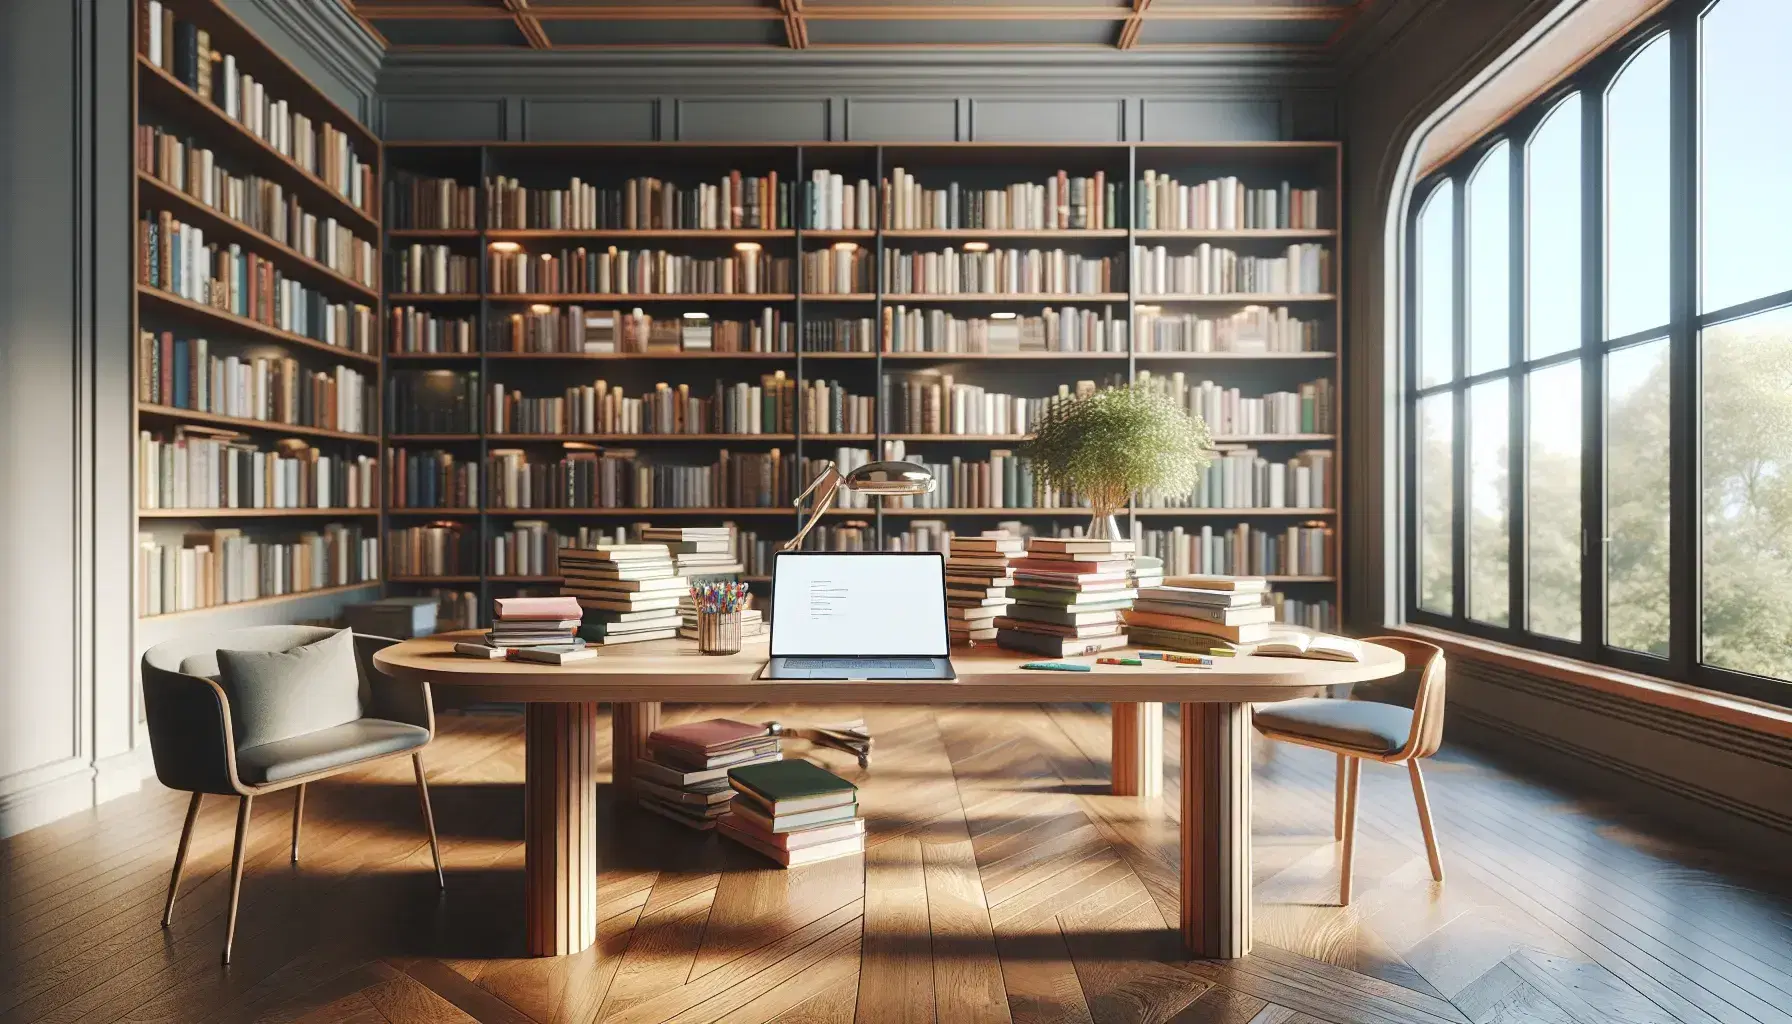 Biblioteca acogedora con estanterías de madera oscura llenas de libros, mesa central con libros abiertos y laptop, planta decorativa y silla con cojín azul bajo ventana iluminada.